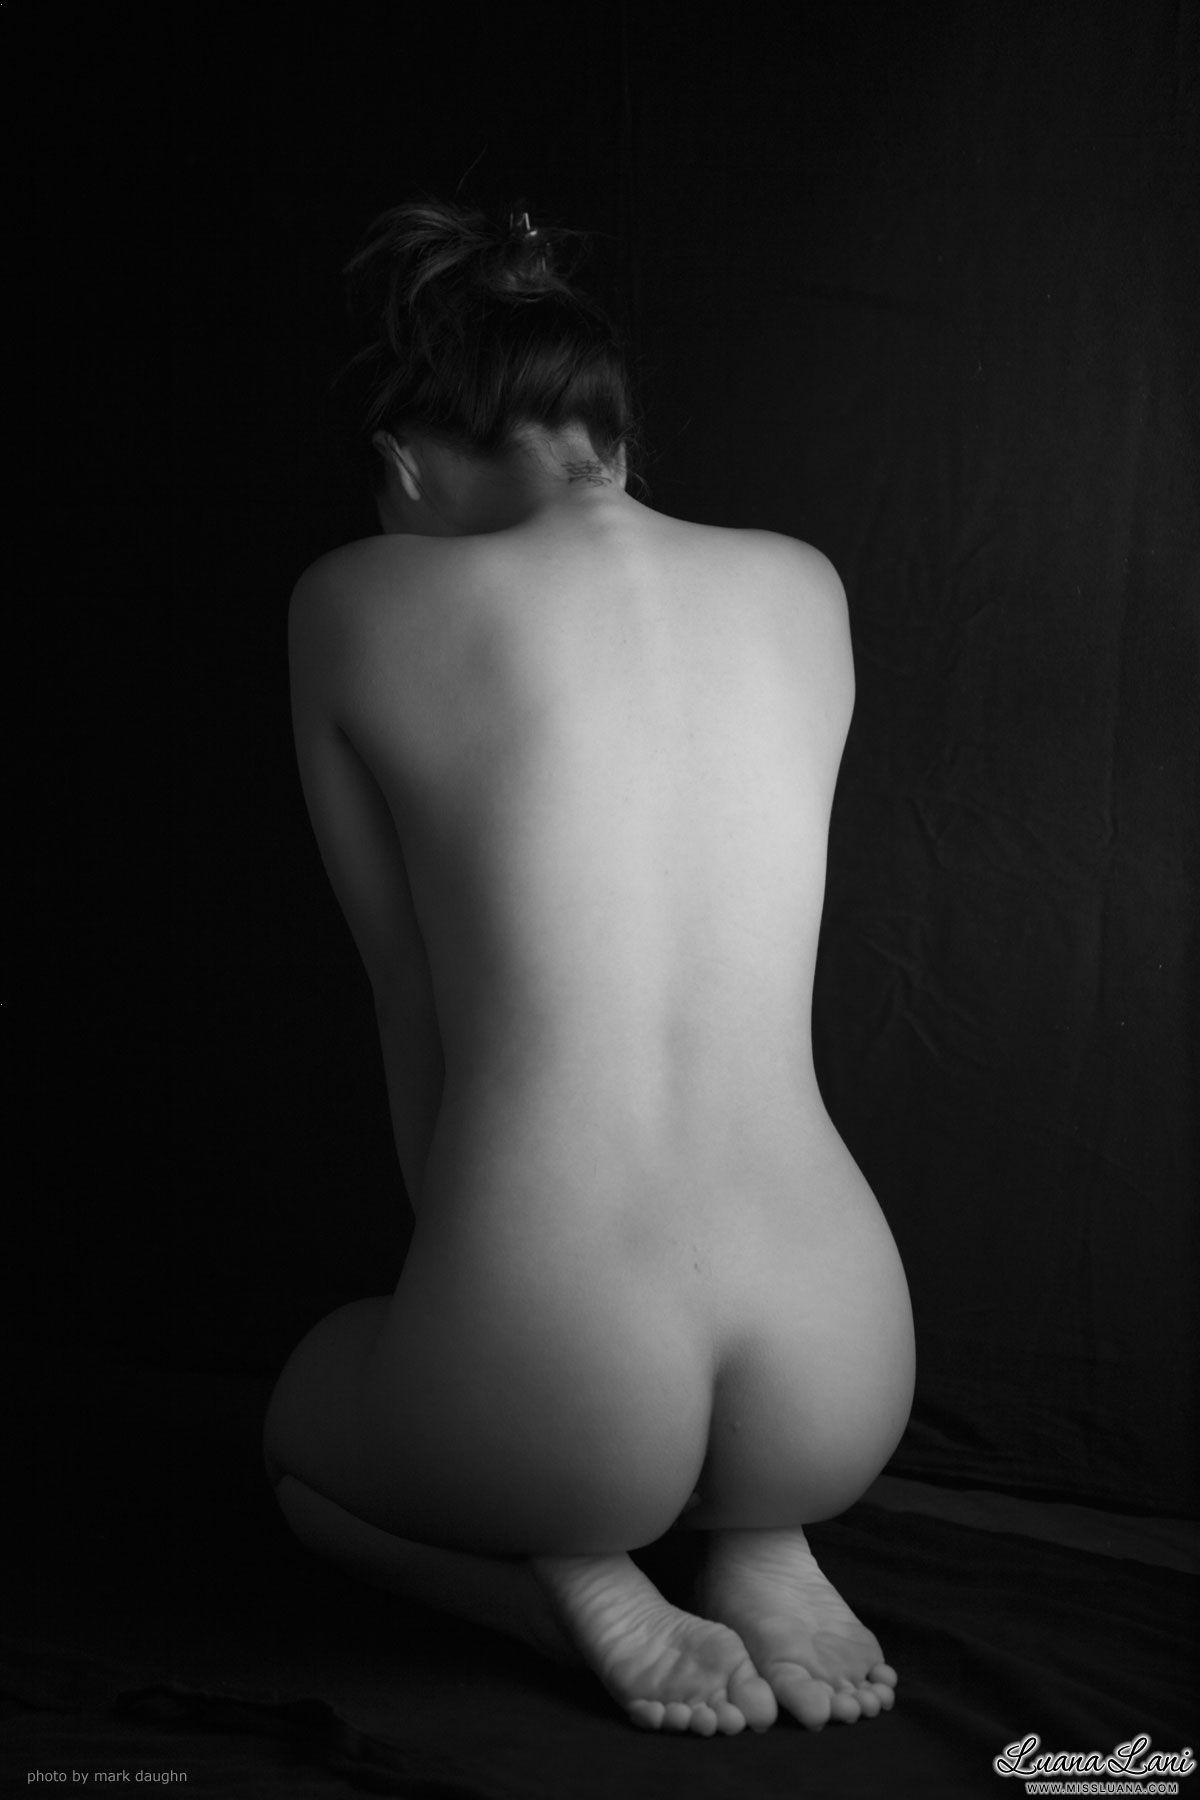 Fotos de la señorita luana mostrando su cuerpo sexy en blanco y negro
 #59585764